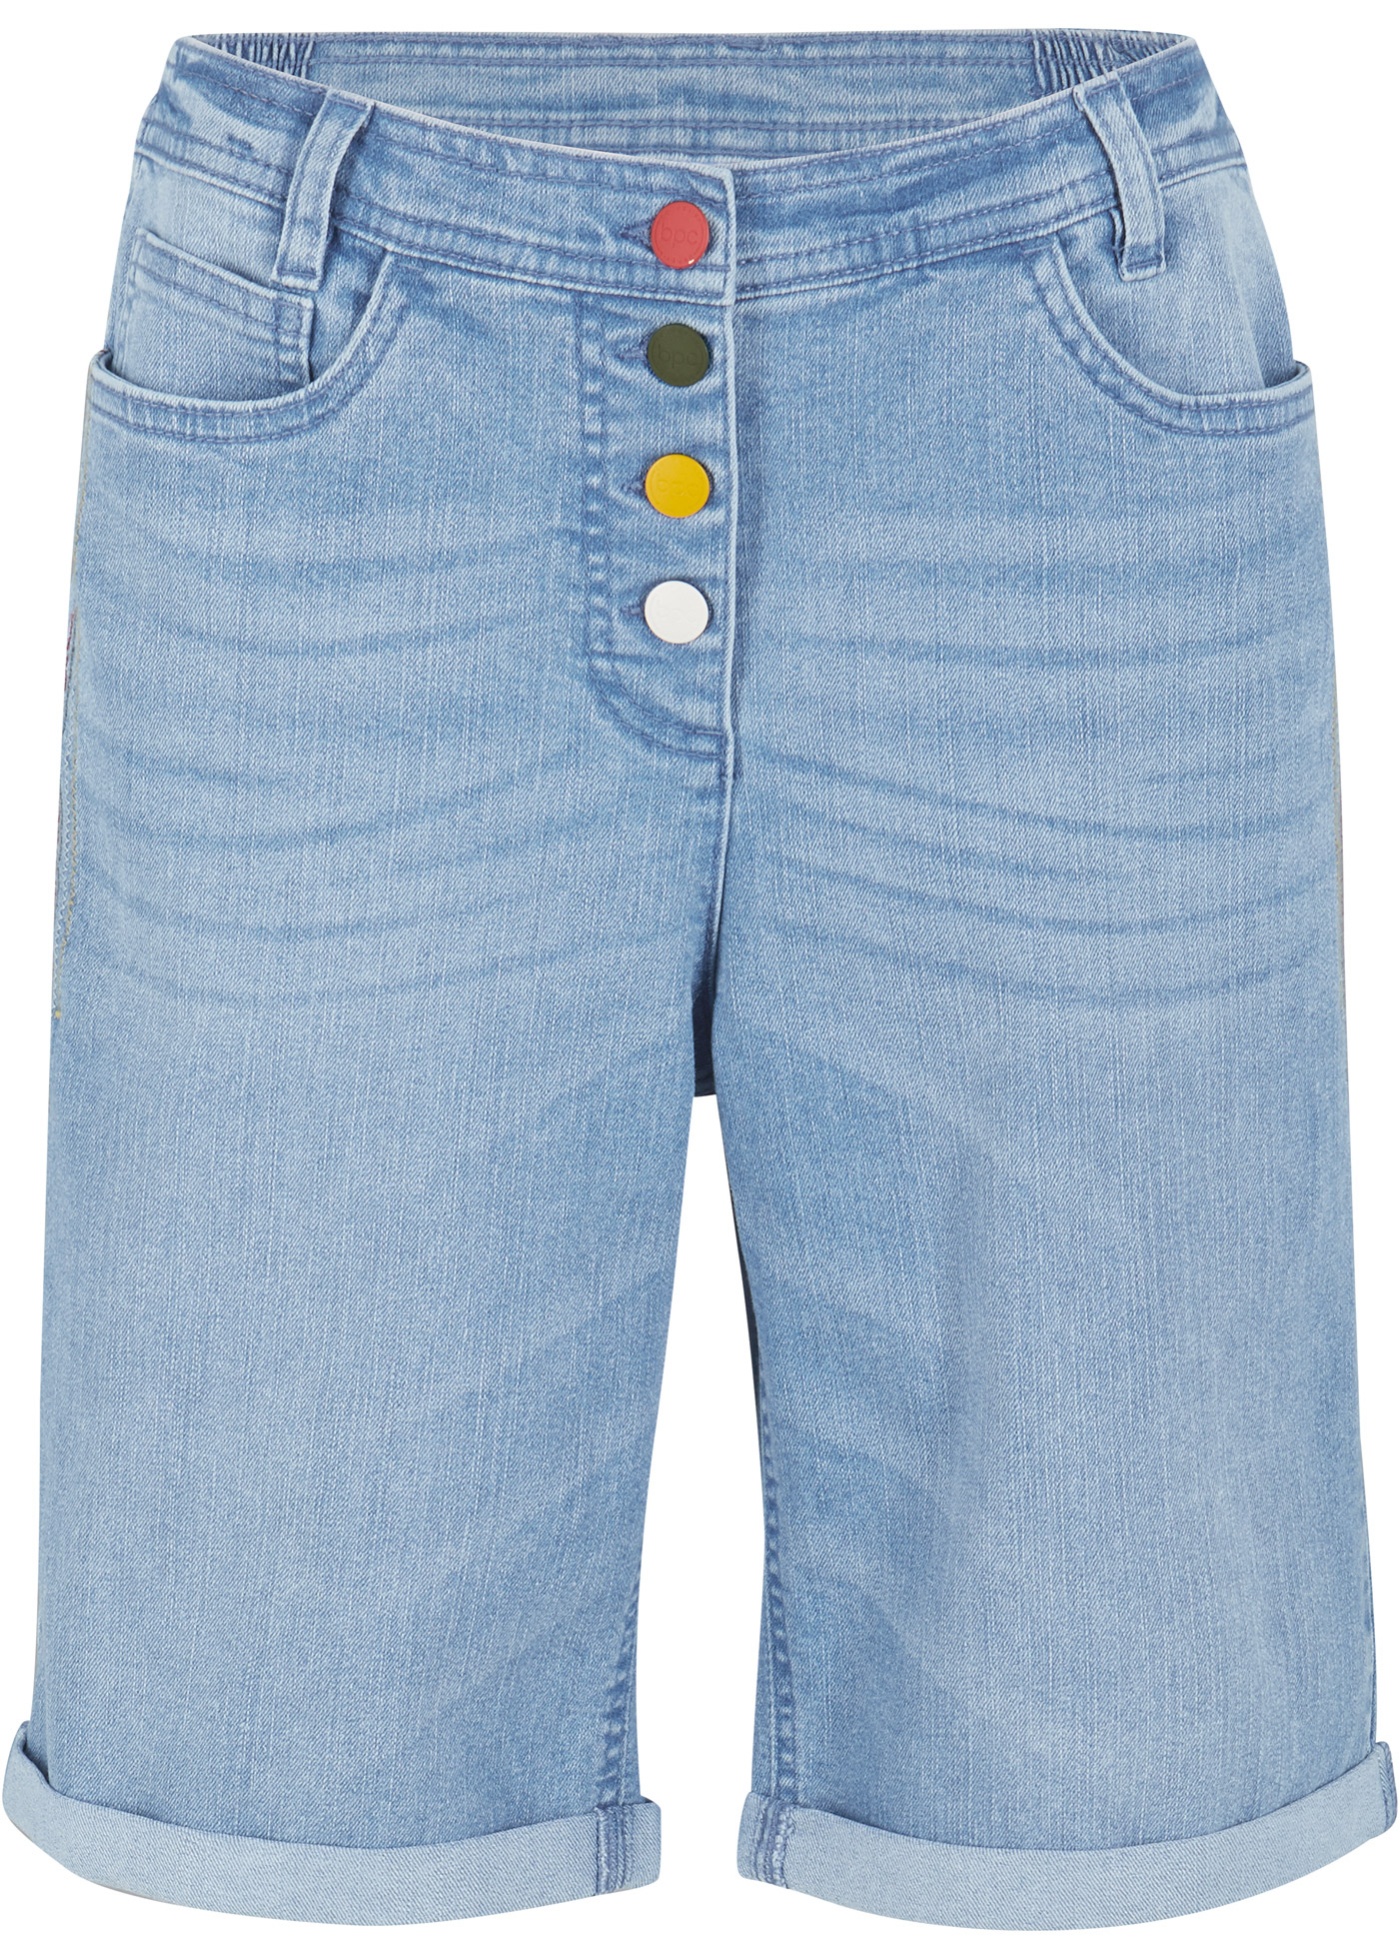 Image de Bermuda en jean confort stretch avec broderie et taille confortable